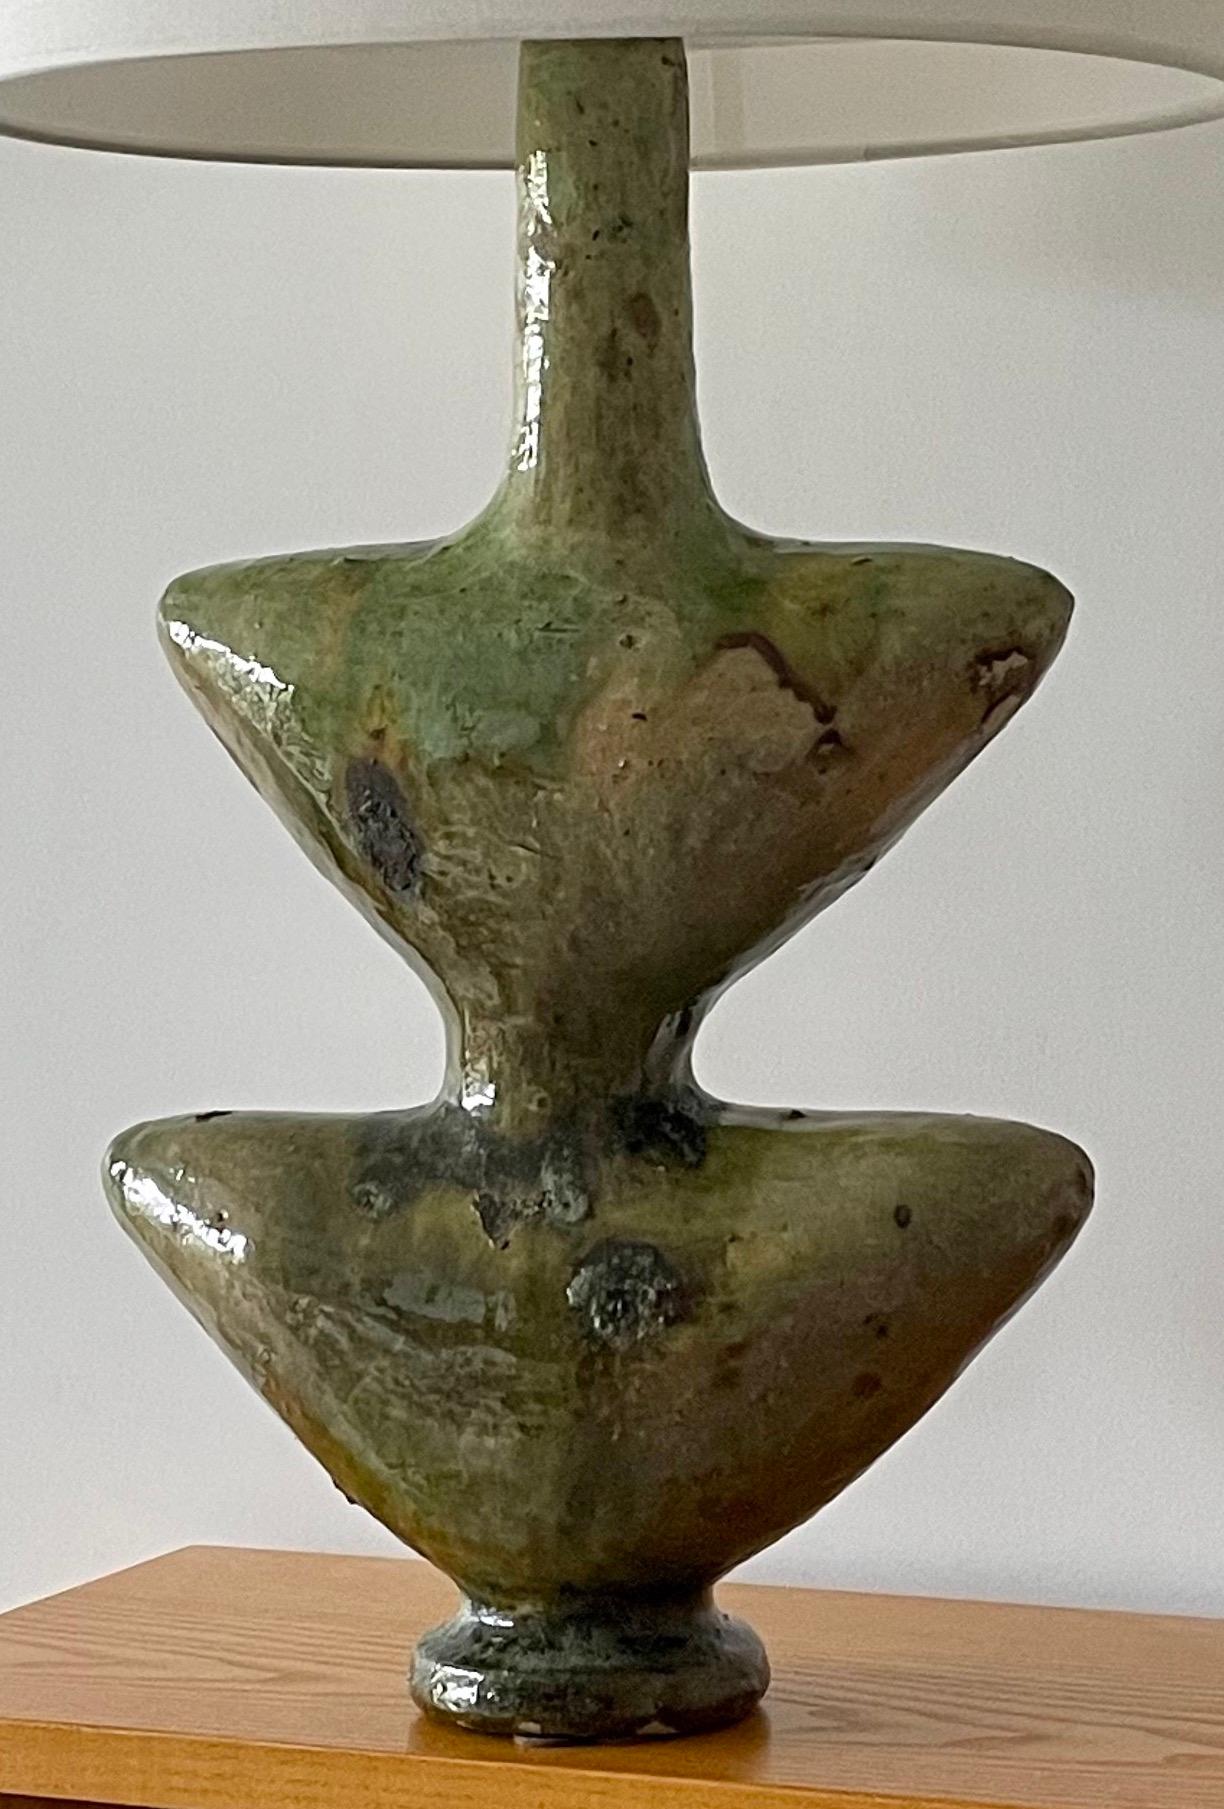 Marokkanische Tamegroute-Keramiklampe

Diese handgefertigte, grün emaillierte Vintage-Lampe ist eine reine Skulptur aus dem südmarokkanischen Dorf Tamegroute, wo geschickte Töpfer lokale Techniken praktizieren, die über Generationen hinweg